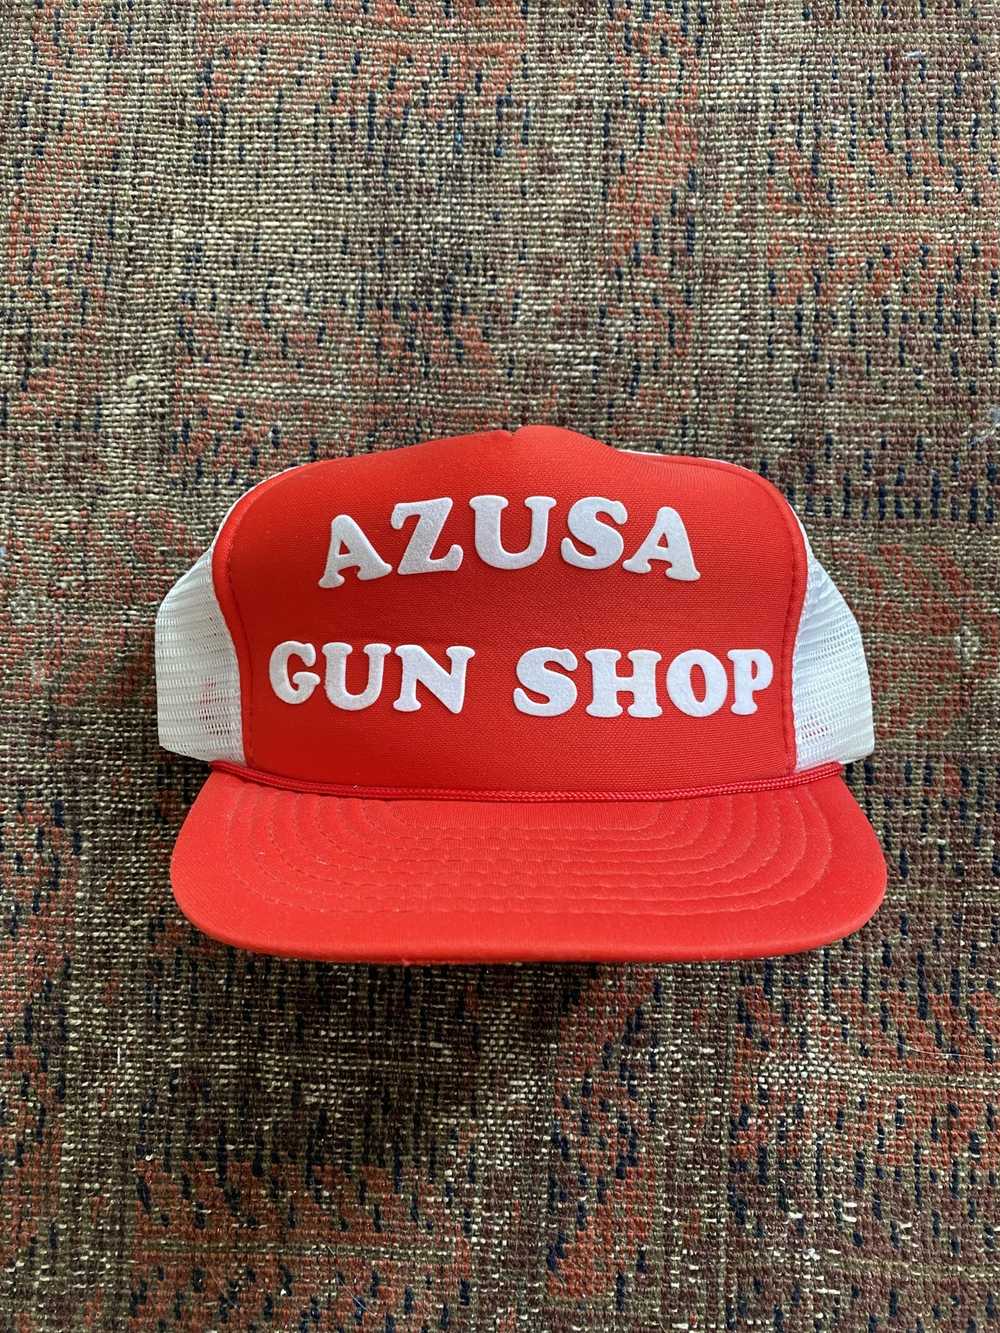 Trucker Hat × Vintage Vintage Azusa Gun Shop Truc… - image 1